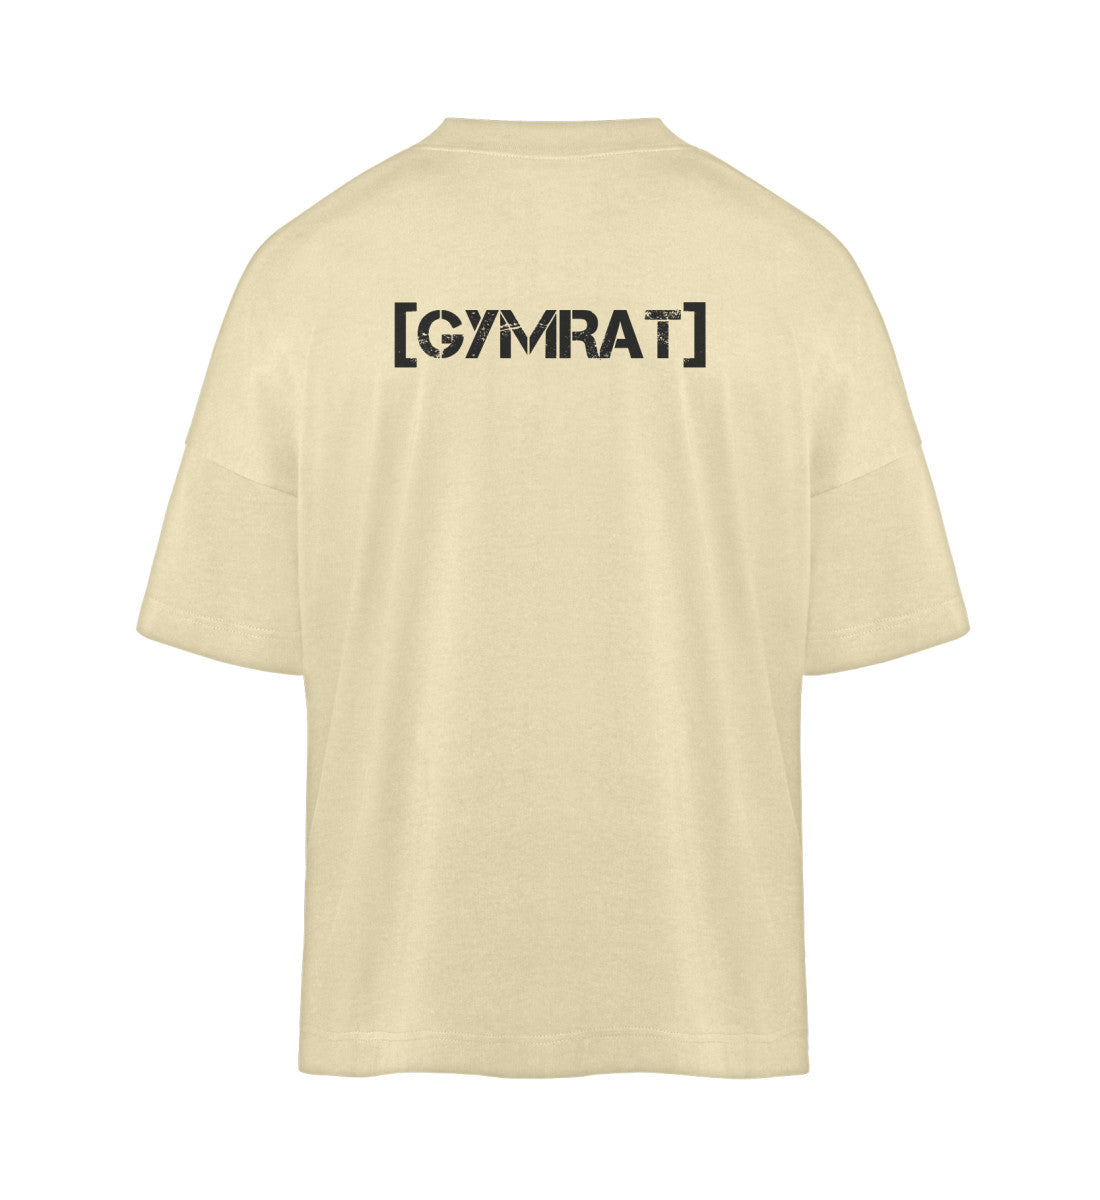 ALPENX GYMRAT Collection - Unisex Oversized Shirt (Druck)